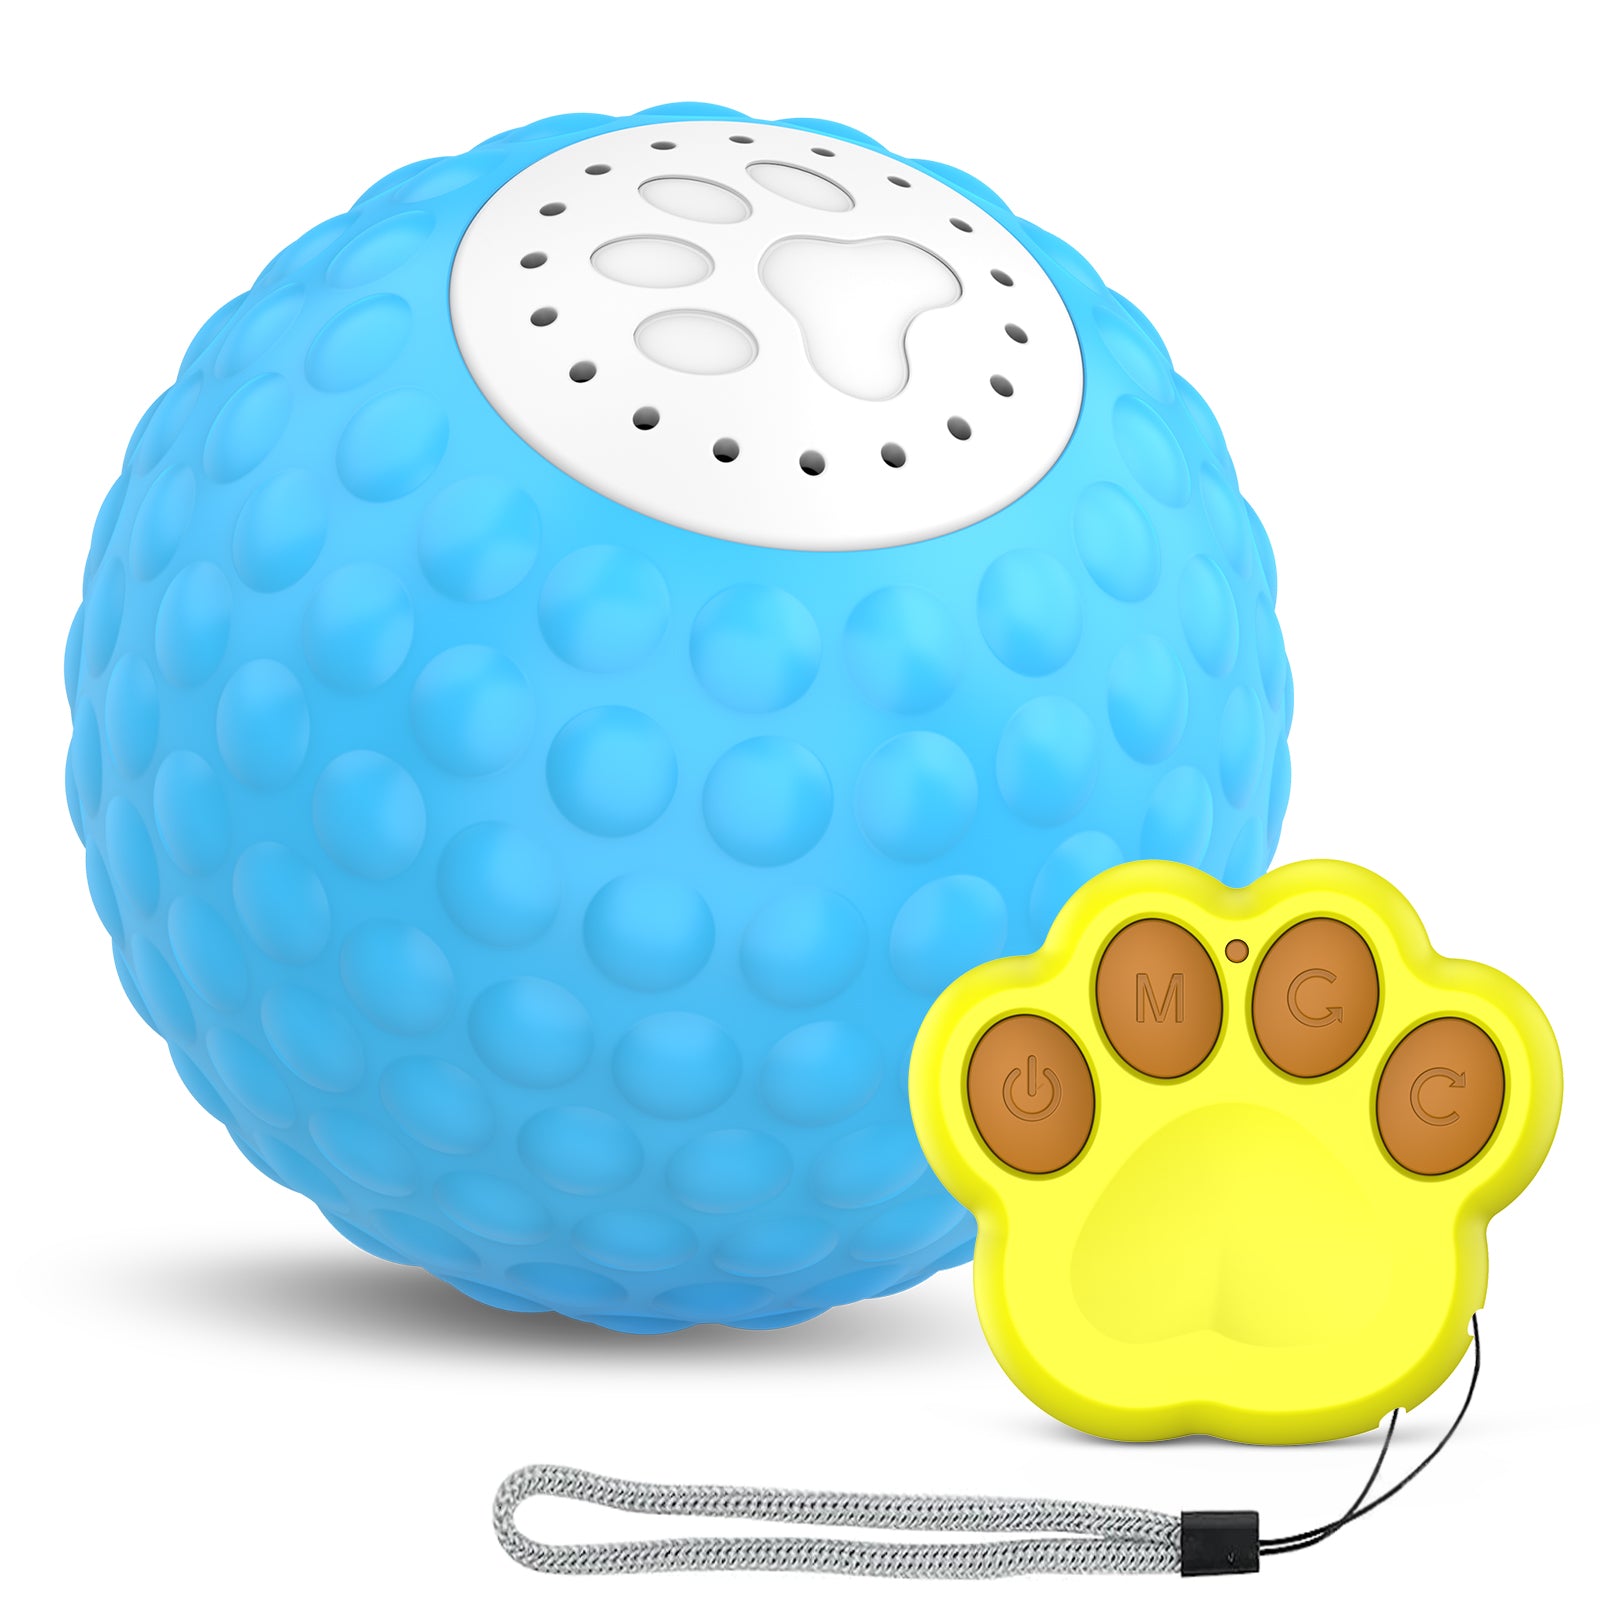 Fluffee C1 Smart Toy Cat Ball